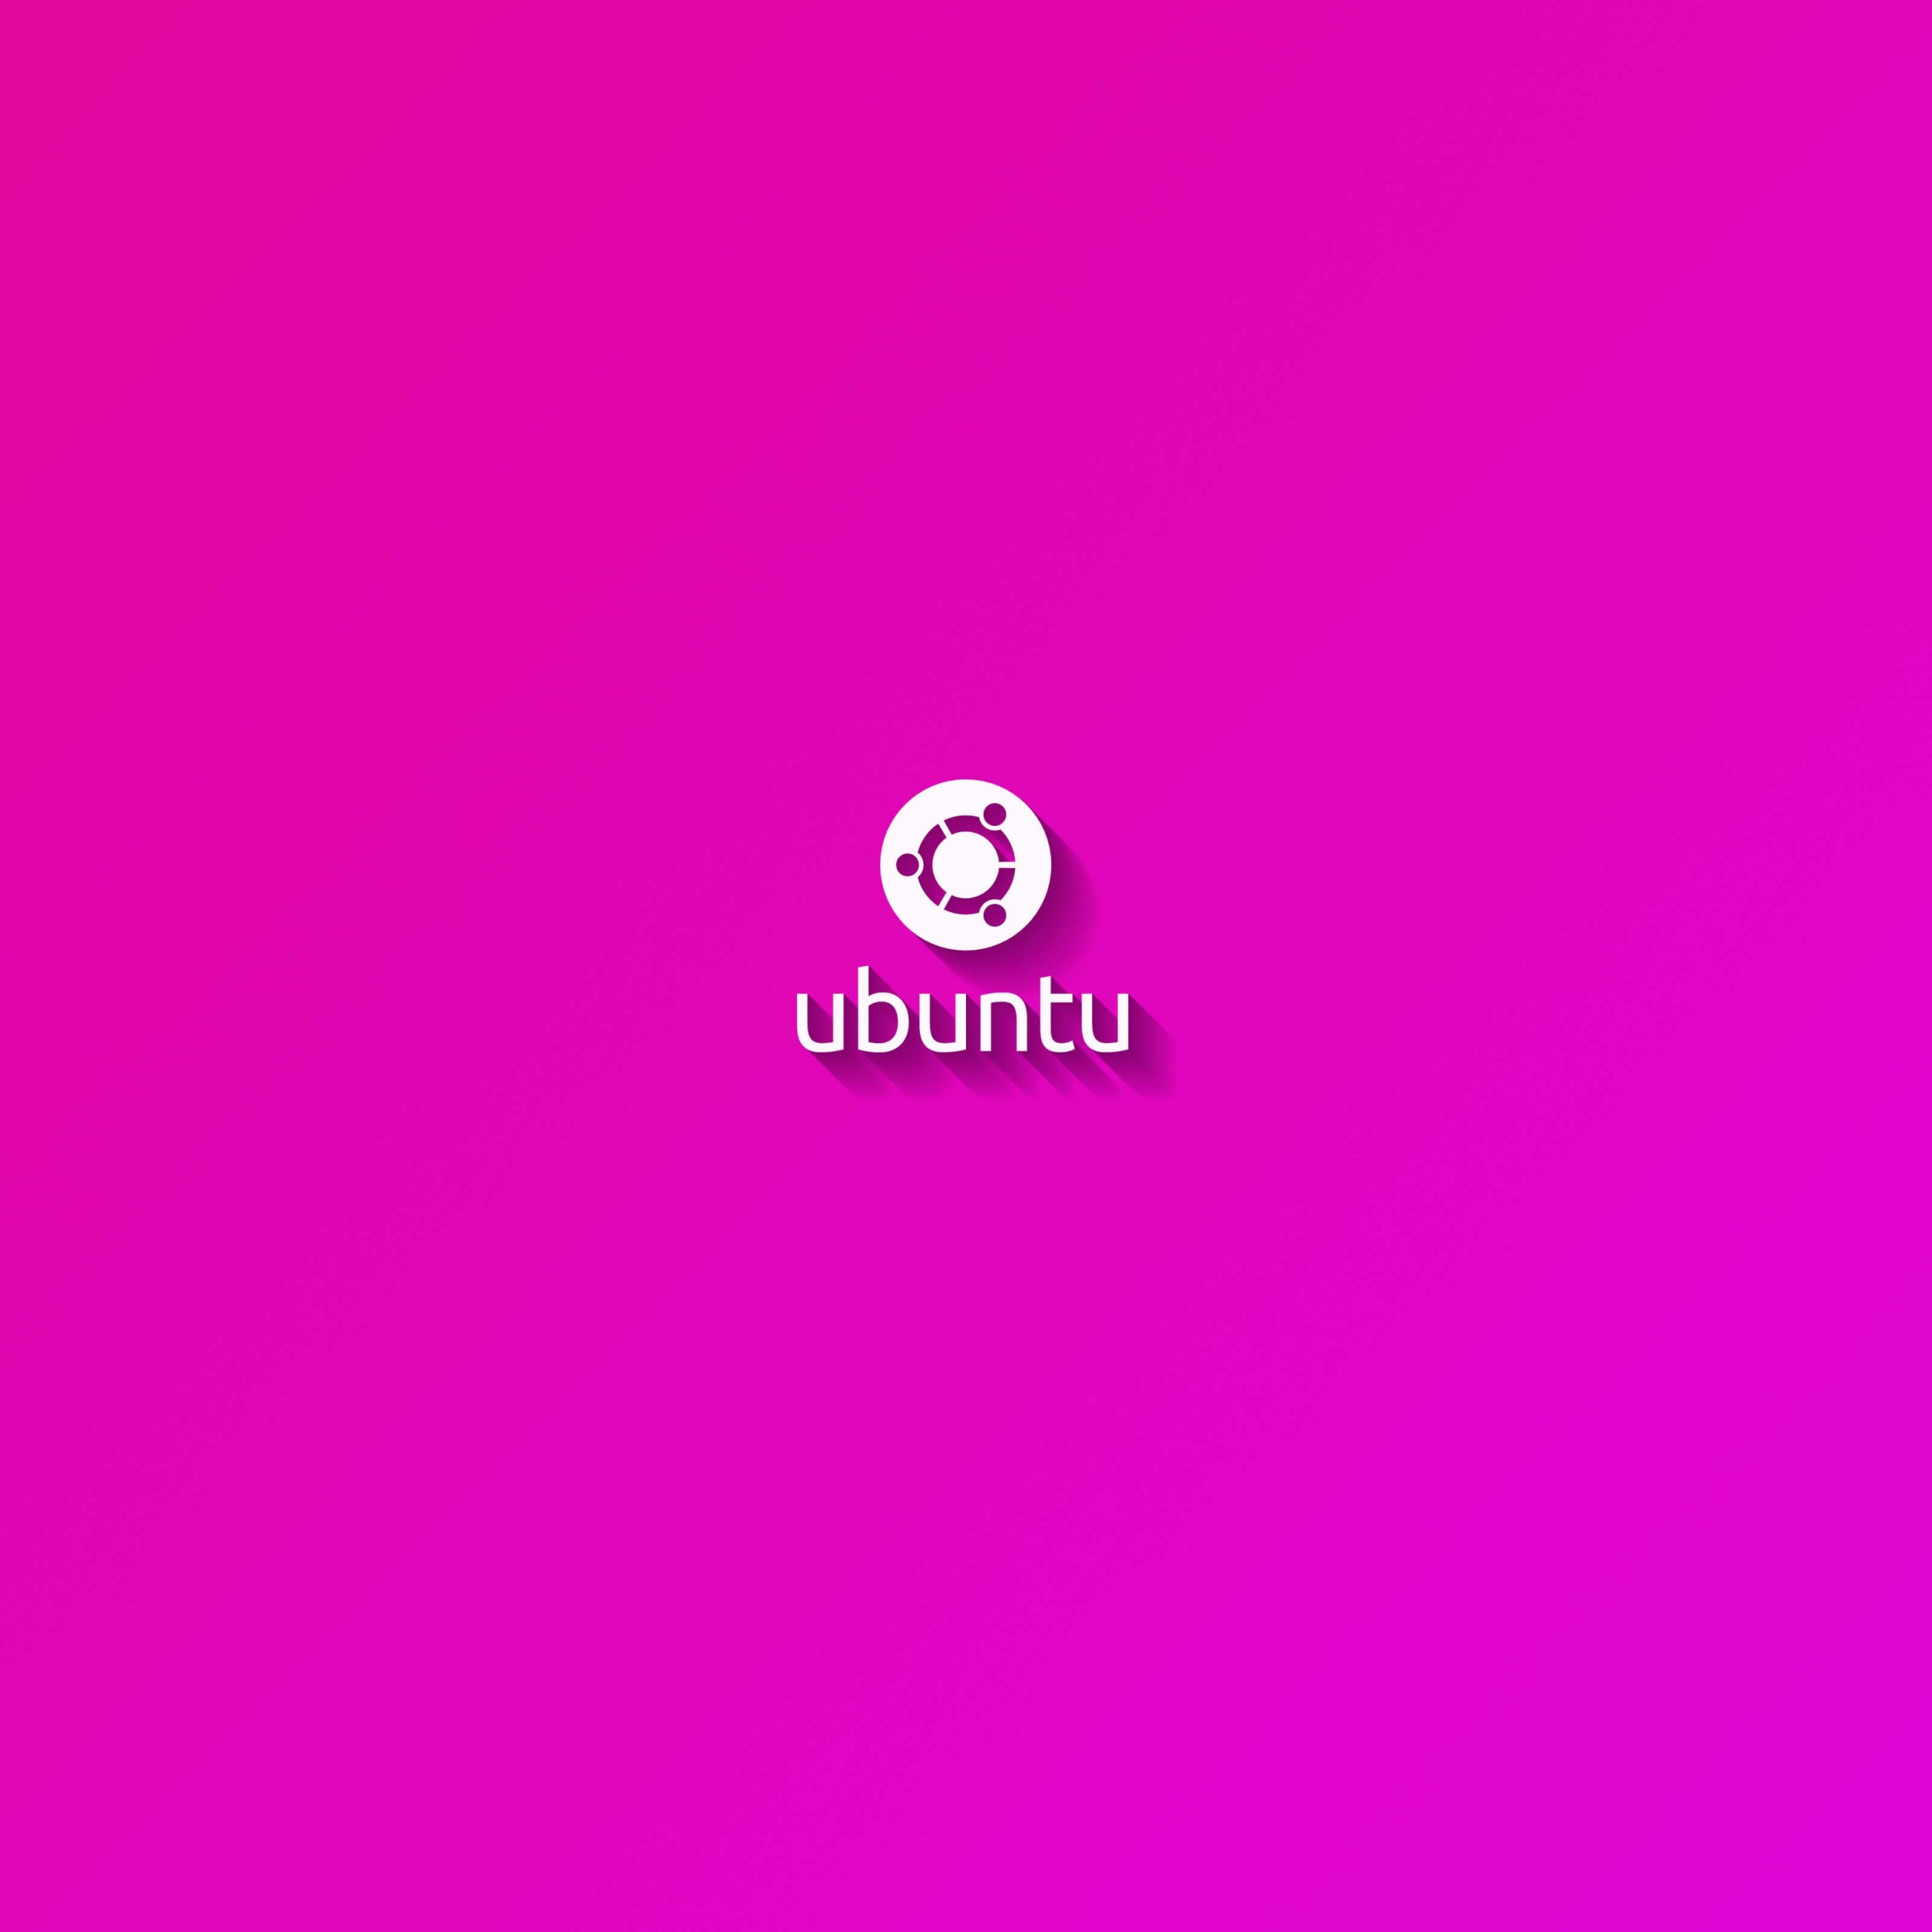 Ubuntu Flat Shadow Pink Wallpaper for Apple iPad 3